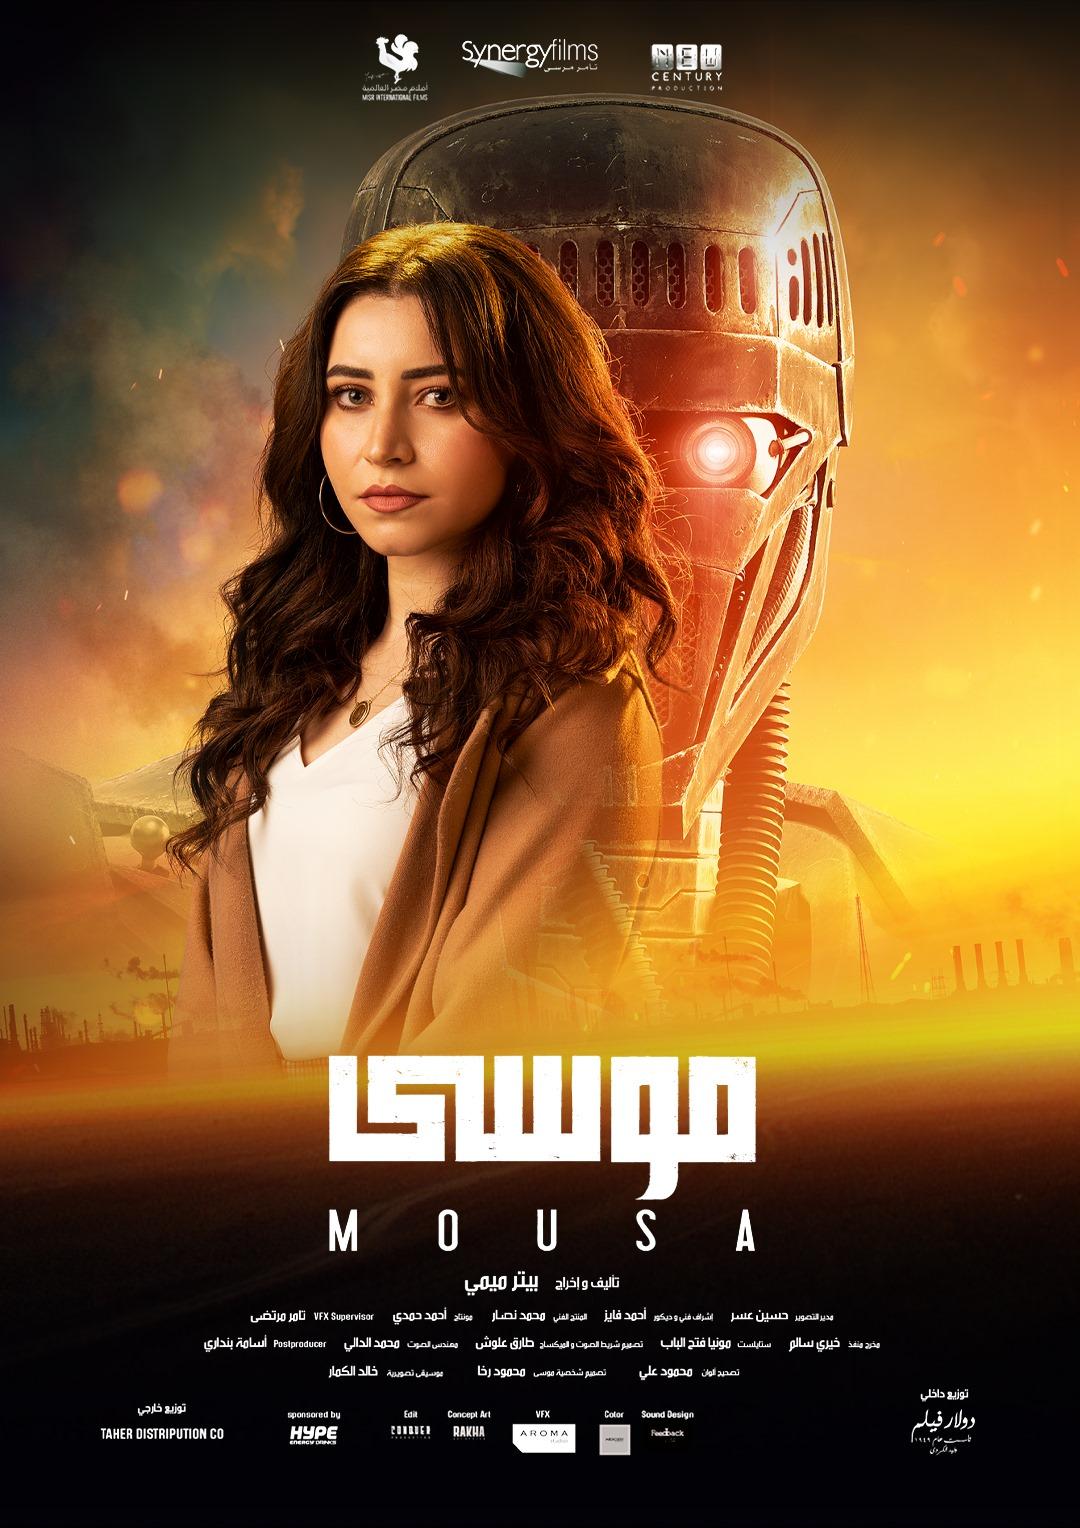 سارة الشامي تتصدر بوستر فيلم "موسى"